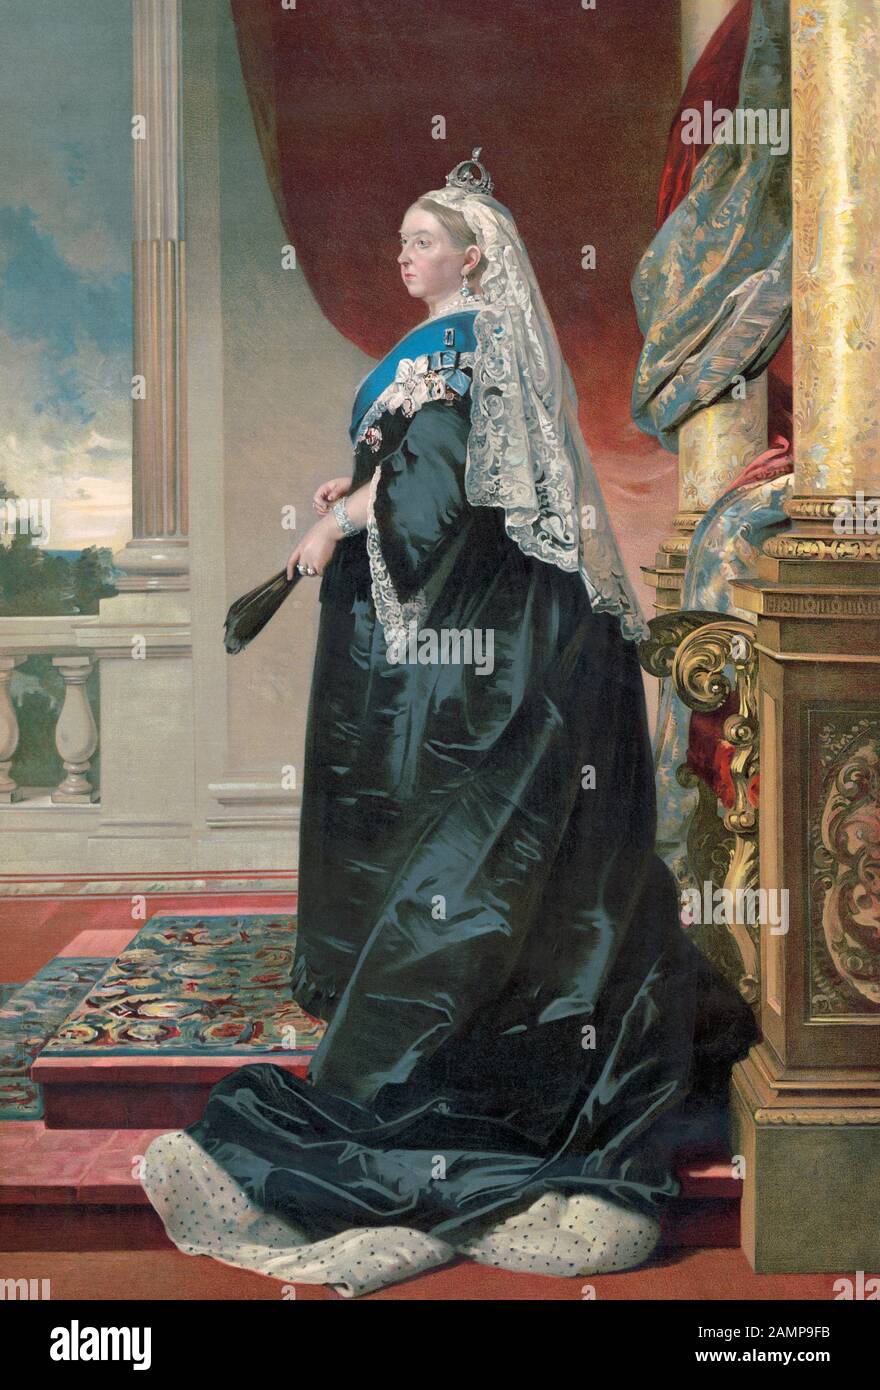 Königin Victoria, 18-1901. Königin des Vereinigten Königreichs und Irlands. Nach einer Arbeit von 1885 des österreichischen Künstlers Heinrich Anton von Angeli, von 1840 - 1925. Stockfoto